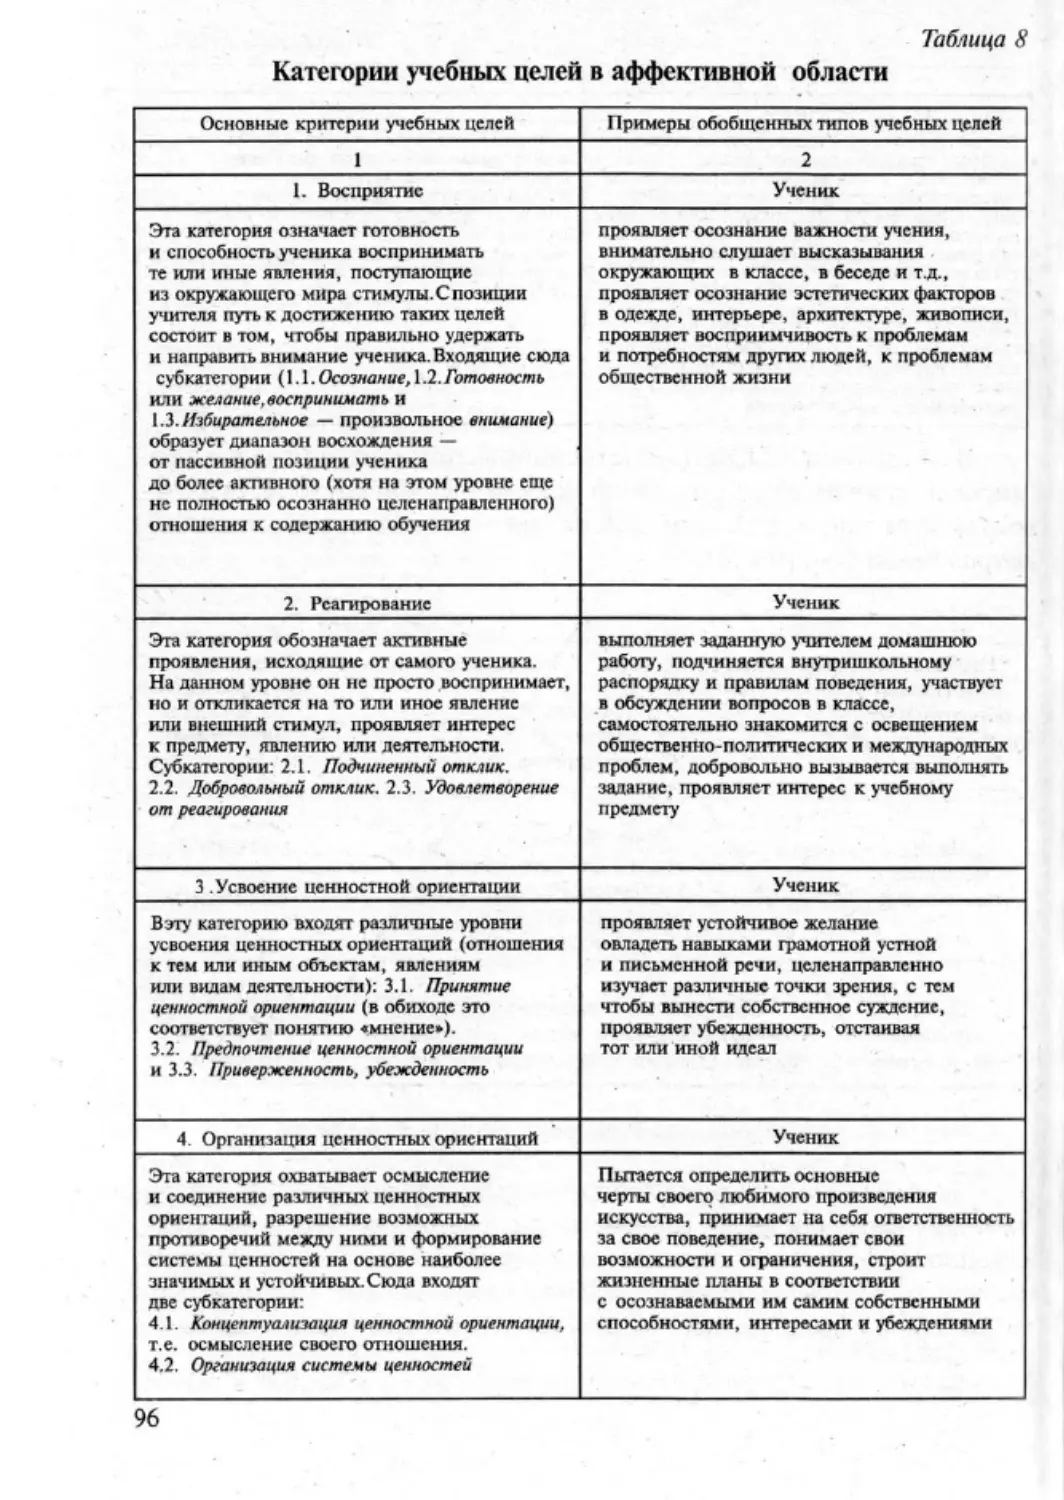 Загрекова Л.В., Николаева В.В - 0097